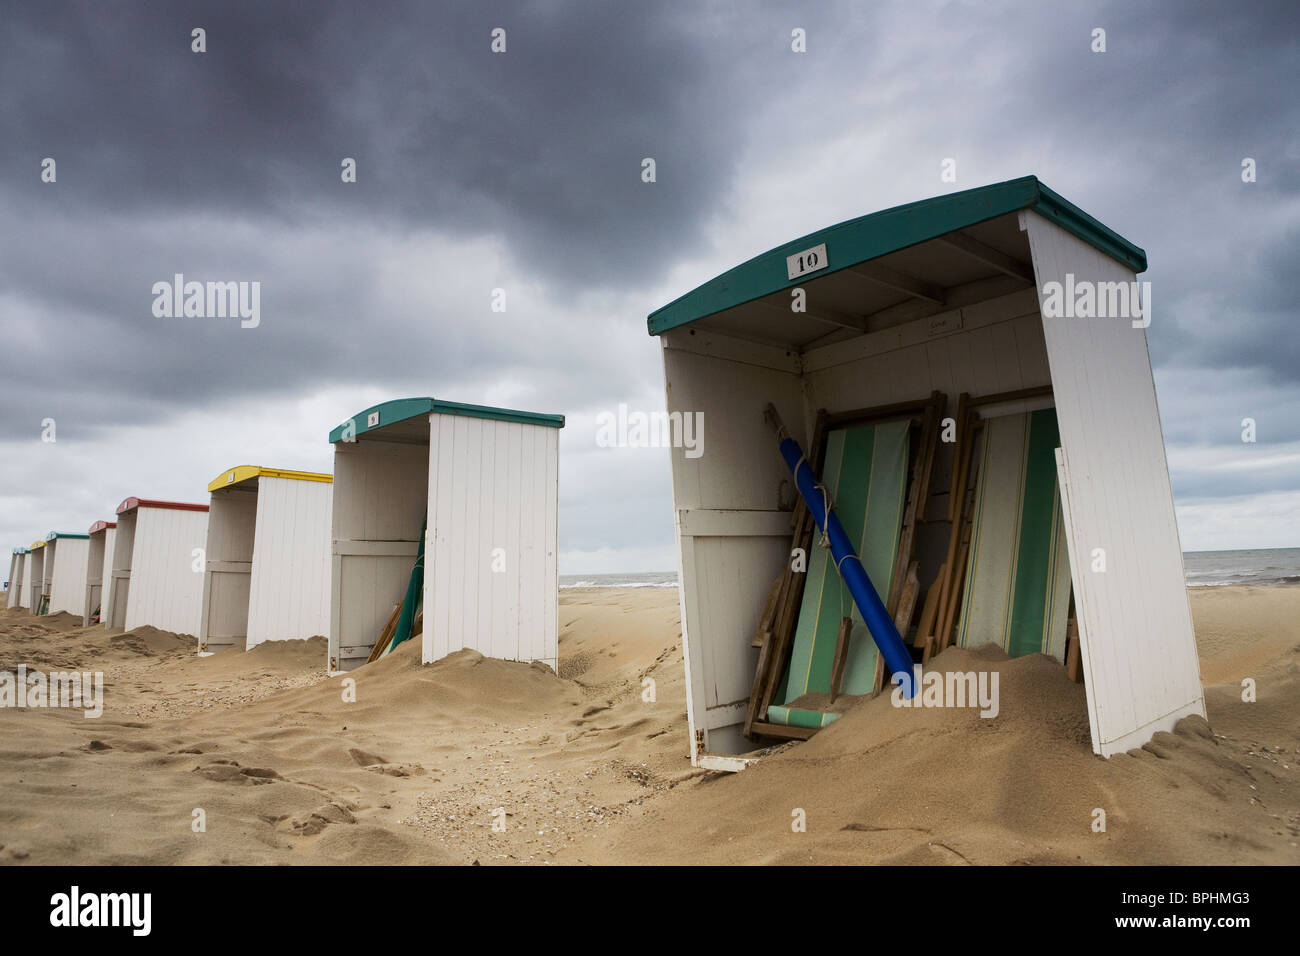 Casas de baños en la playa después de una fuerte tormenta Foto de stock